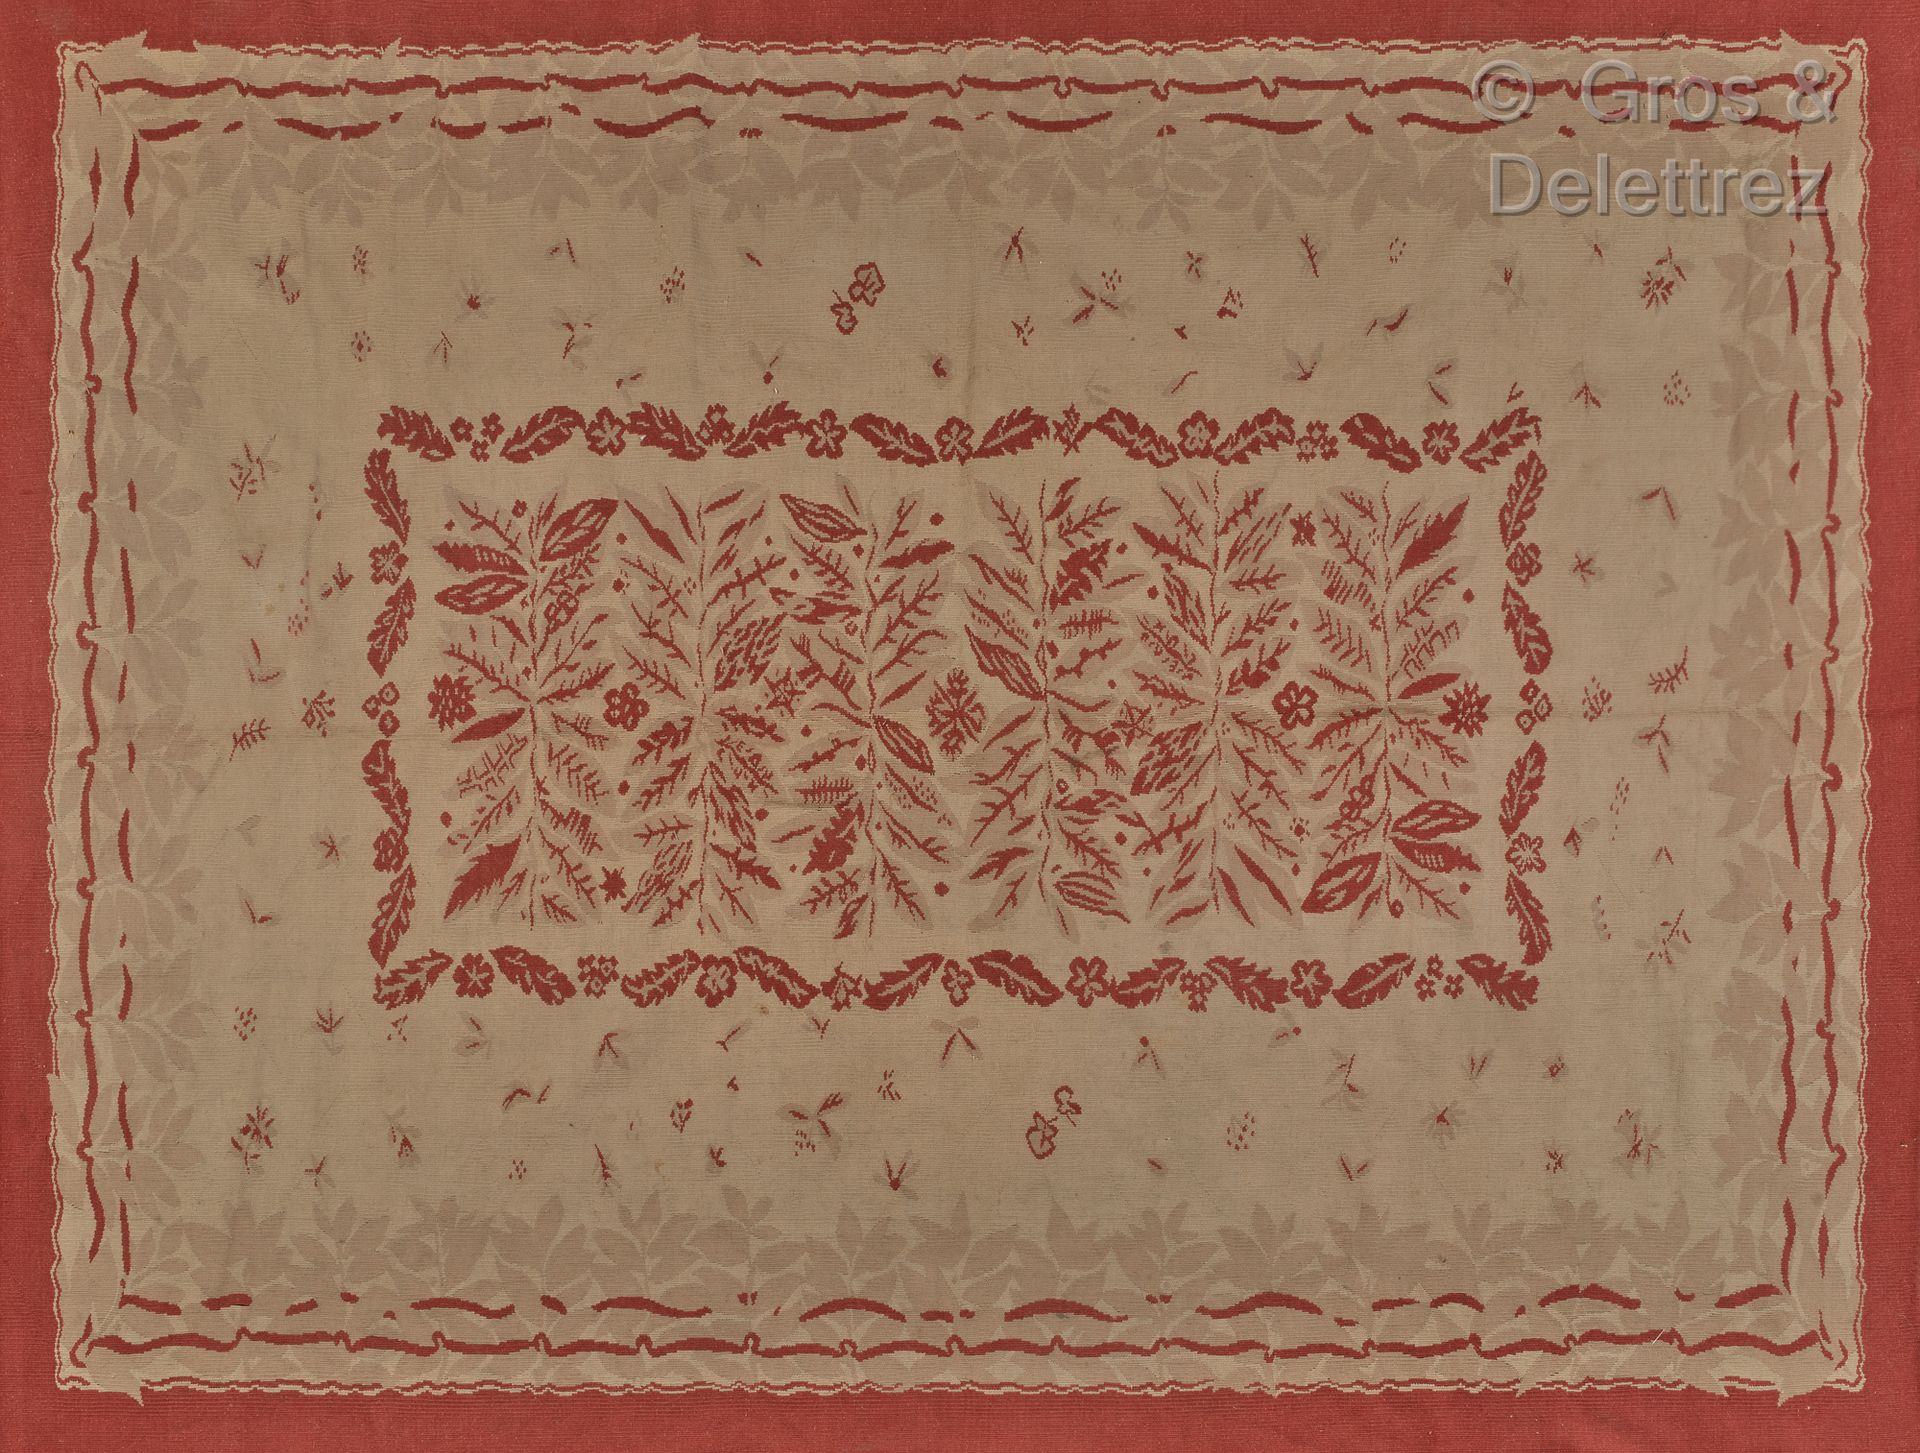 AUBUSSON 有米色和红色植物装饰的羊毛地毯。

约1940年。

300 x 210 cm